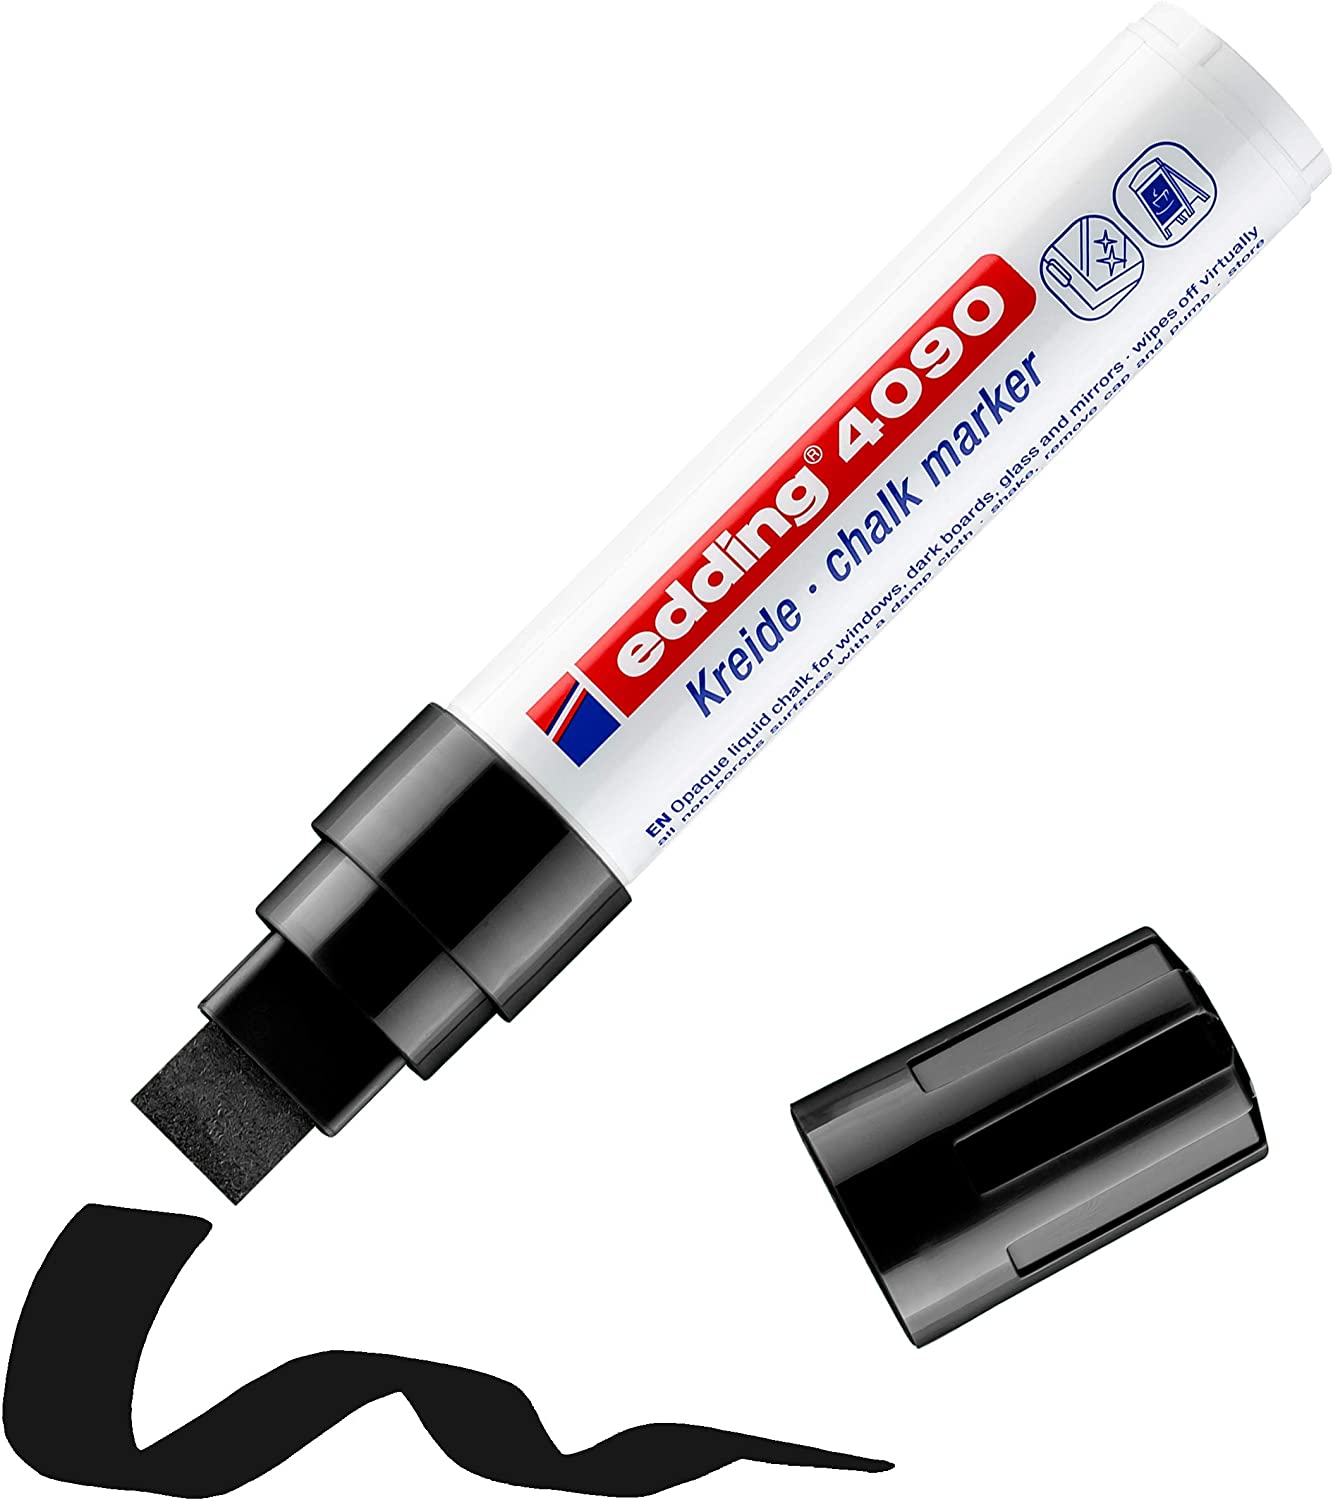 Edding 4090 Marqueur Craie Liquide - Pointe Biseautée - Trait Entre 4 et 15mm - Odeur Neutre - Couleur Noir